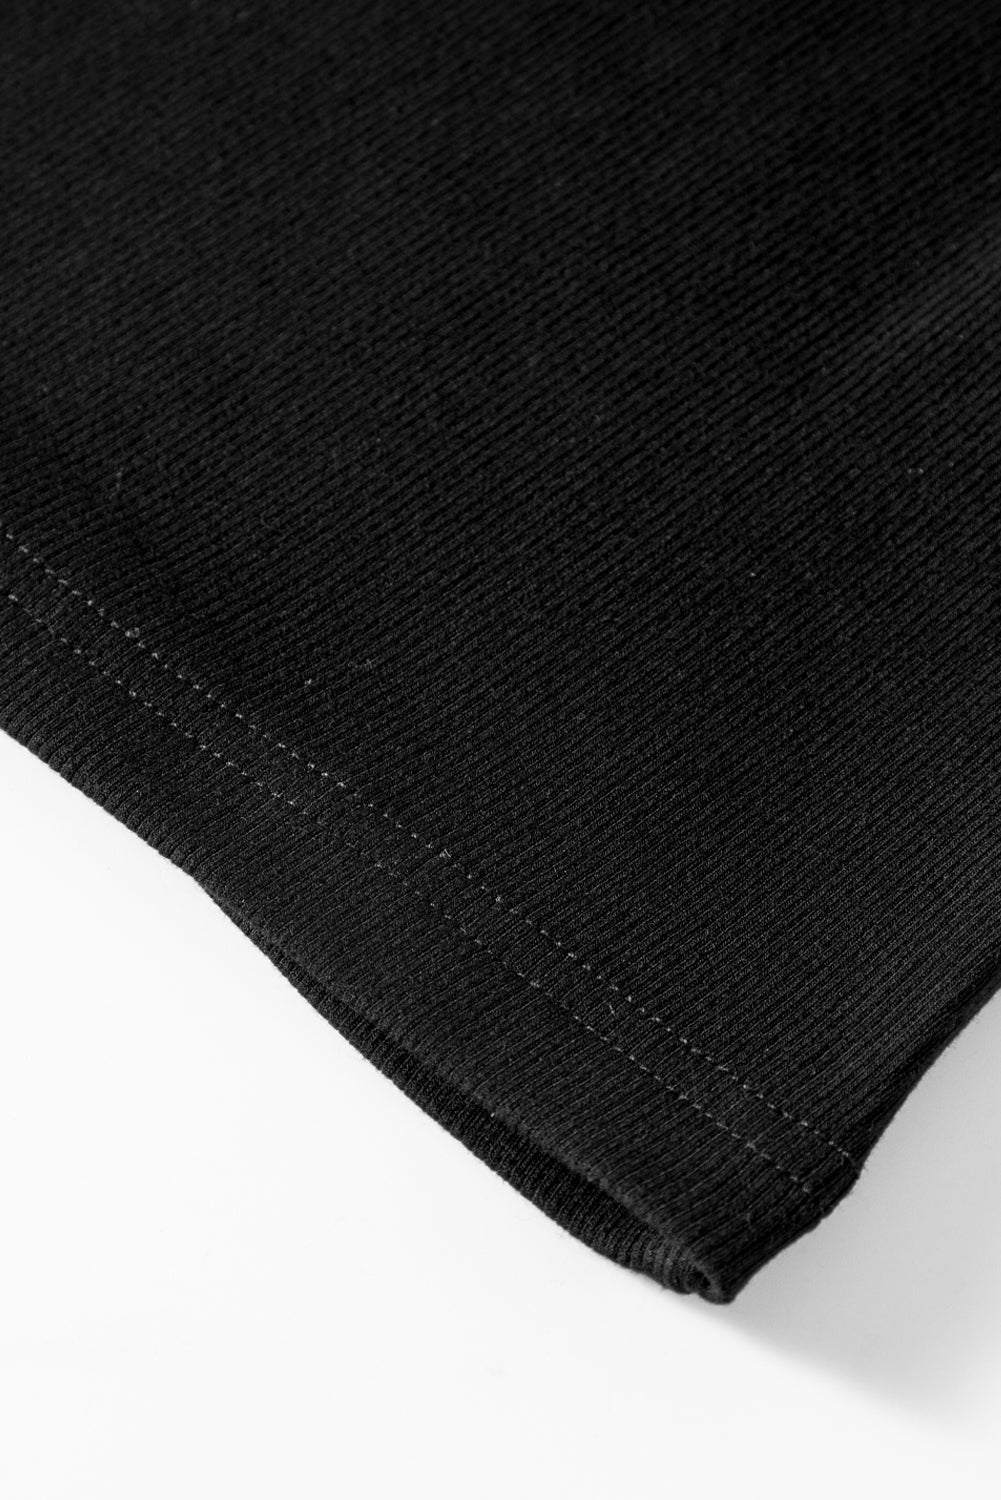 Schwarzes, halbärmliges Oberteil mit Stern-Pailletten-Spleißen